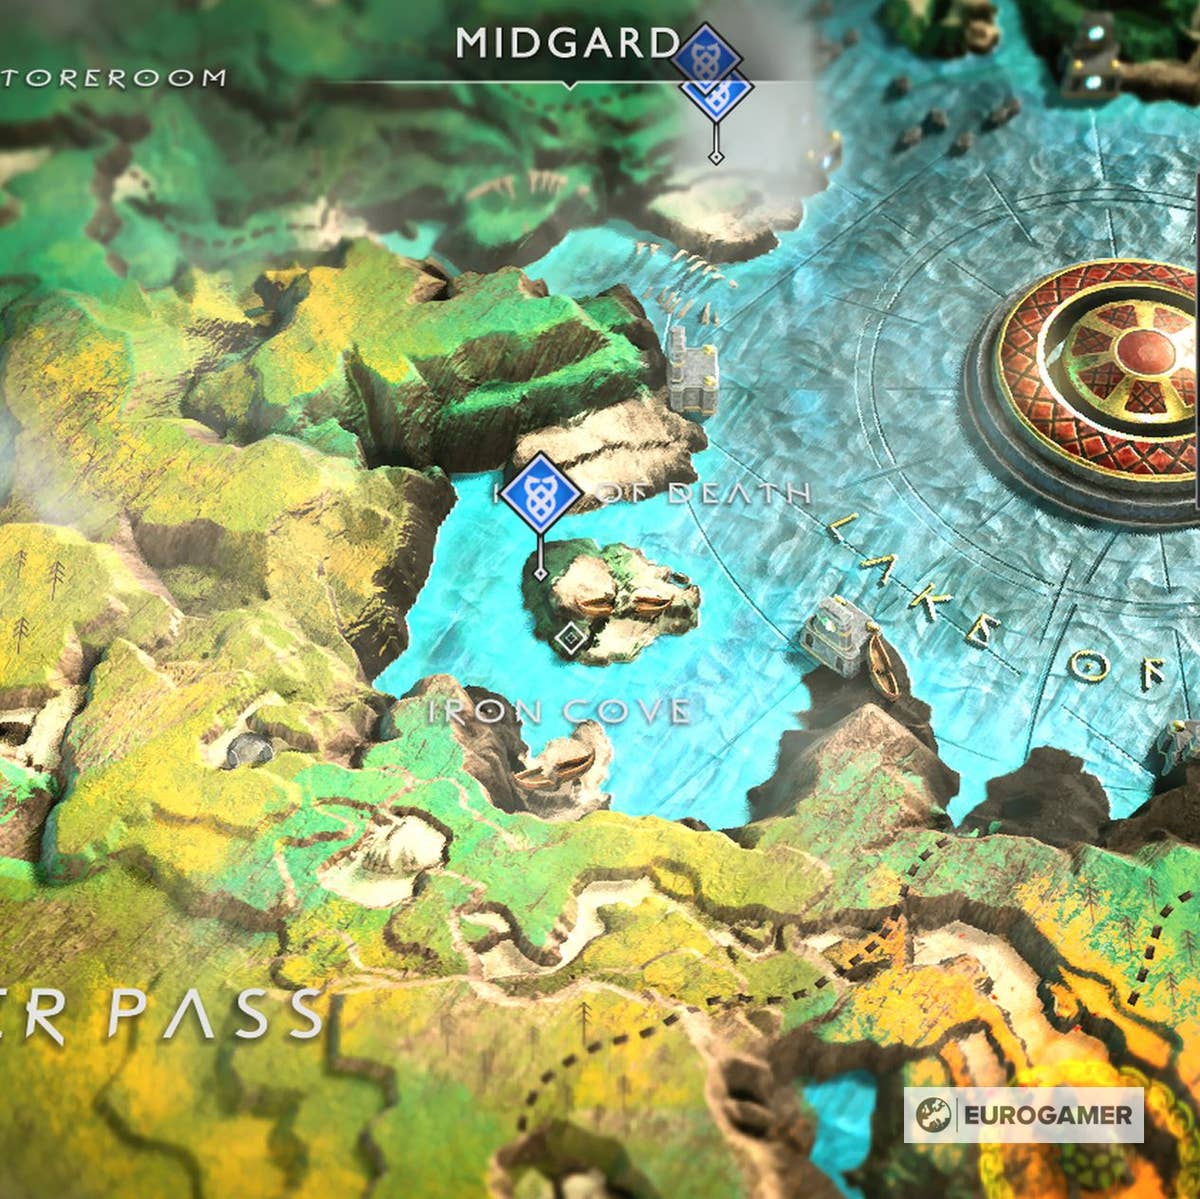 Localização de TODOS os mapas de tesouro - God of war 